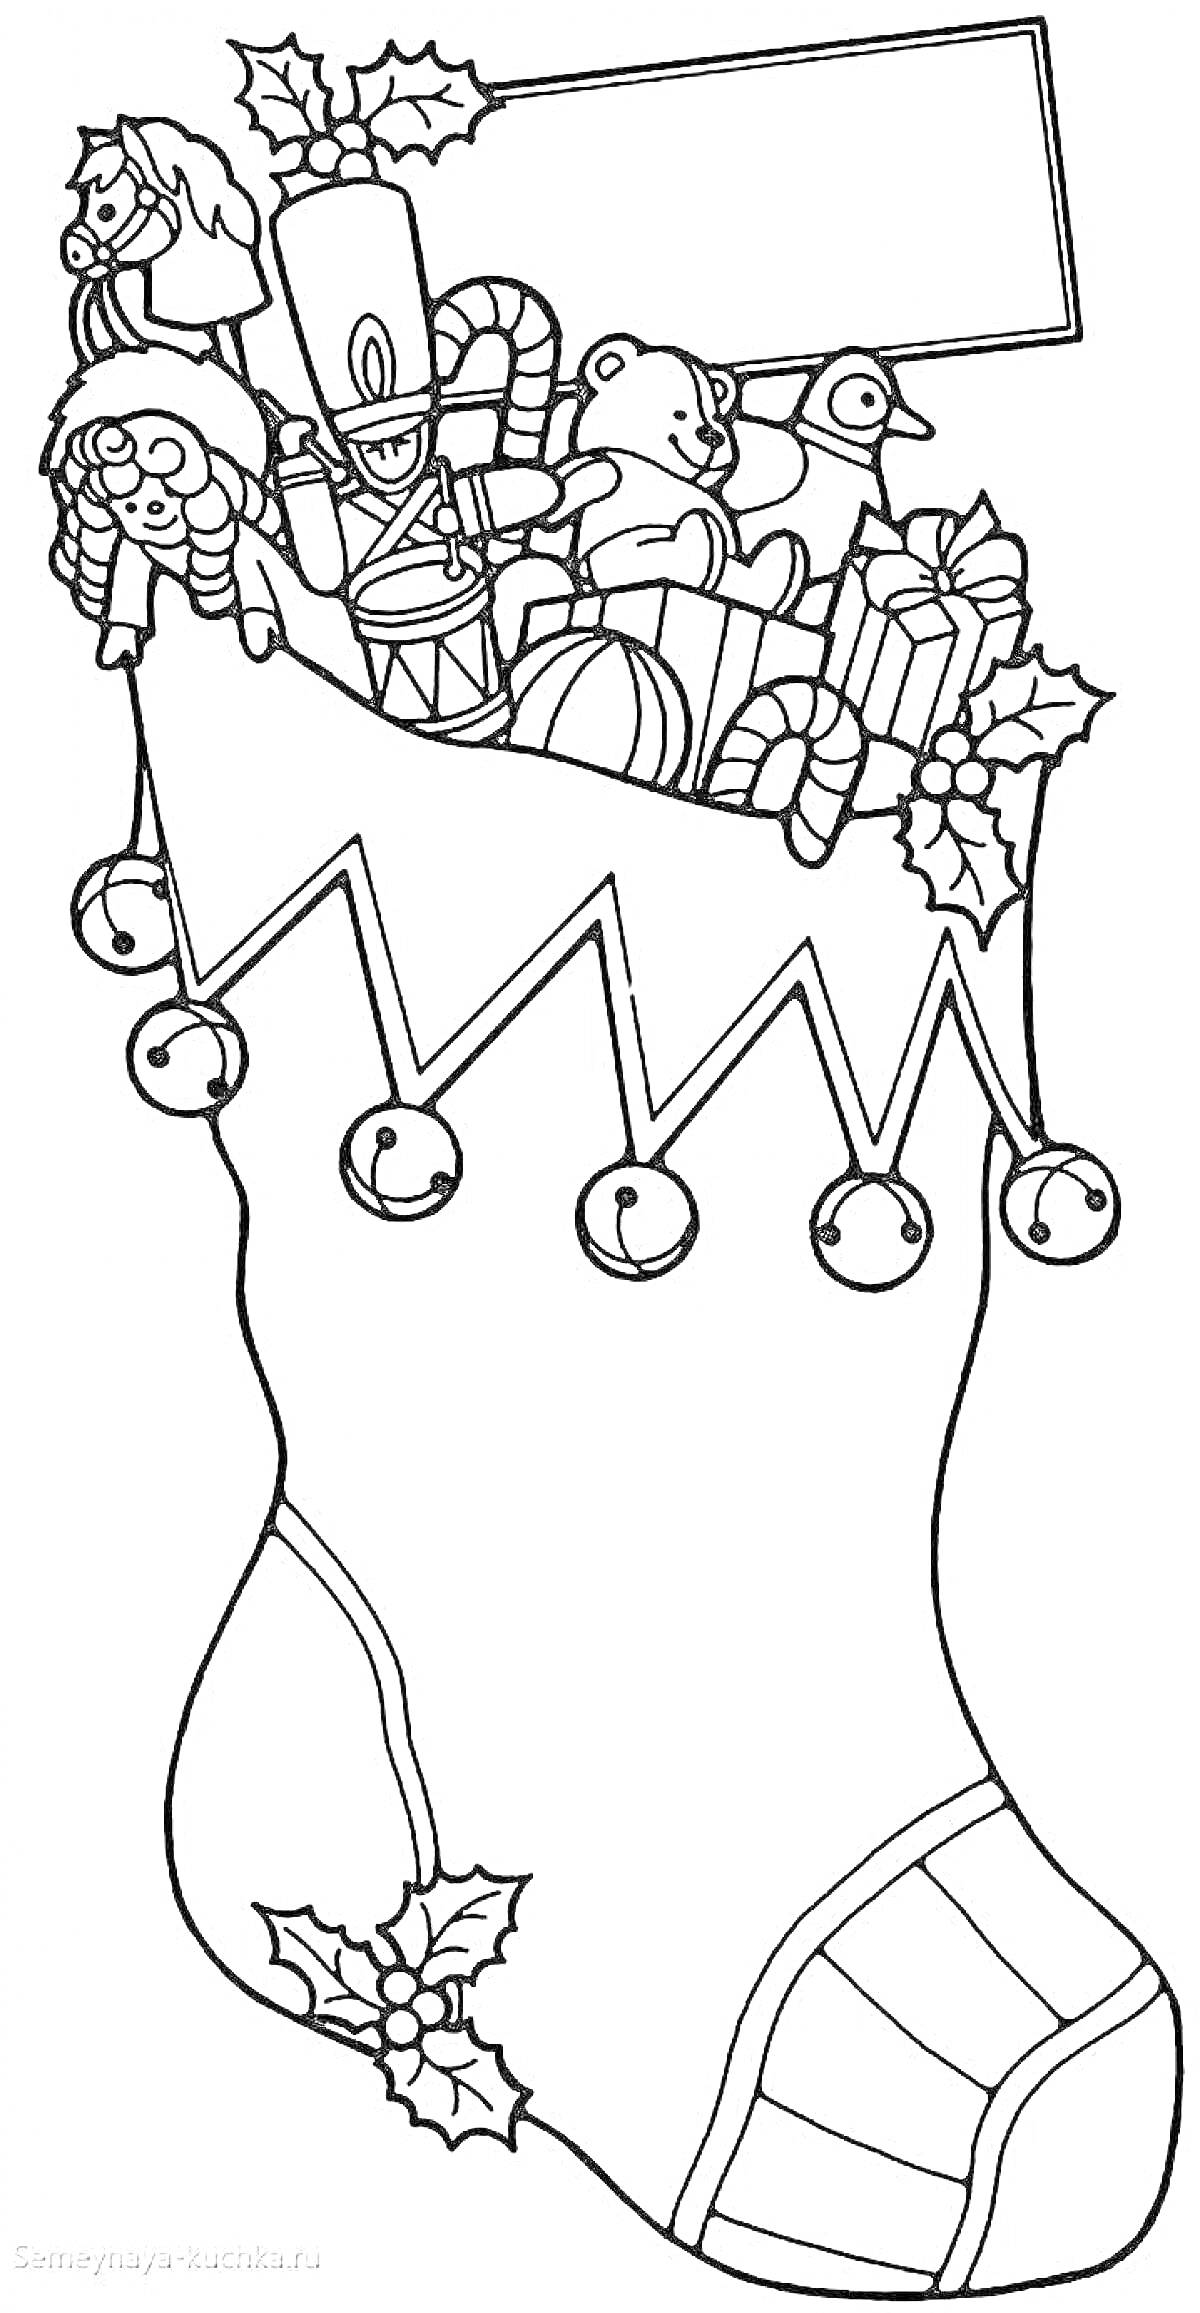 Рождественский сапожок с игрушками, орехоколом, мишкой, уточкой, леденцом в форме трости, подарками и листьями падуба с ягодами